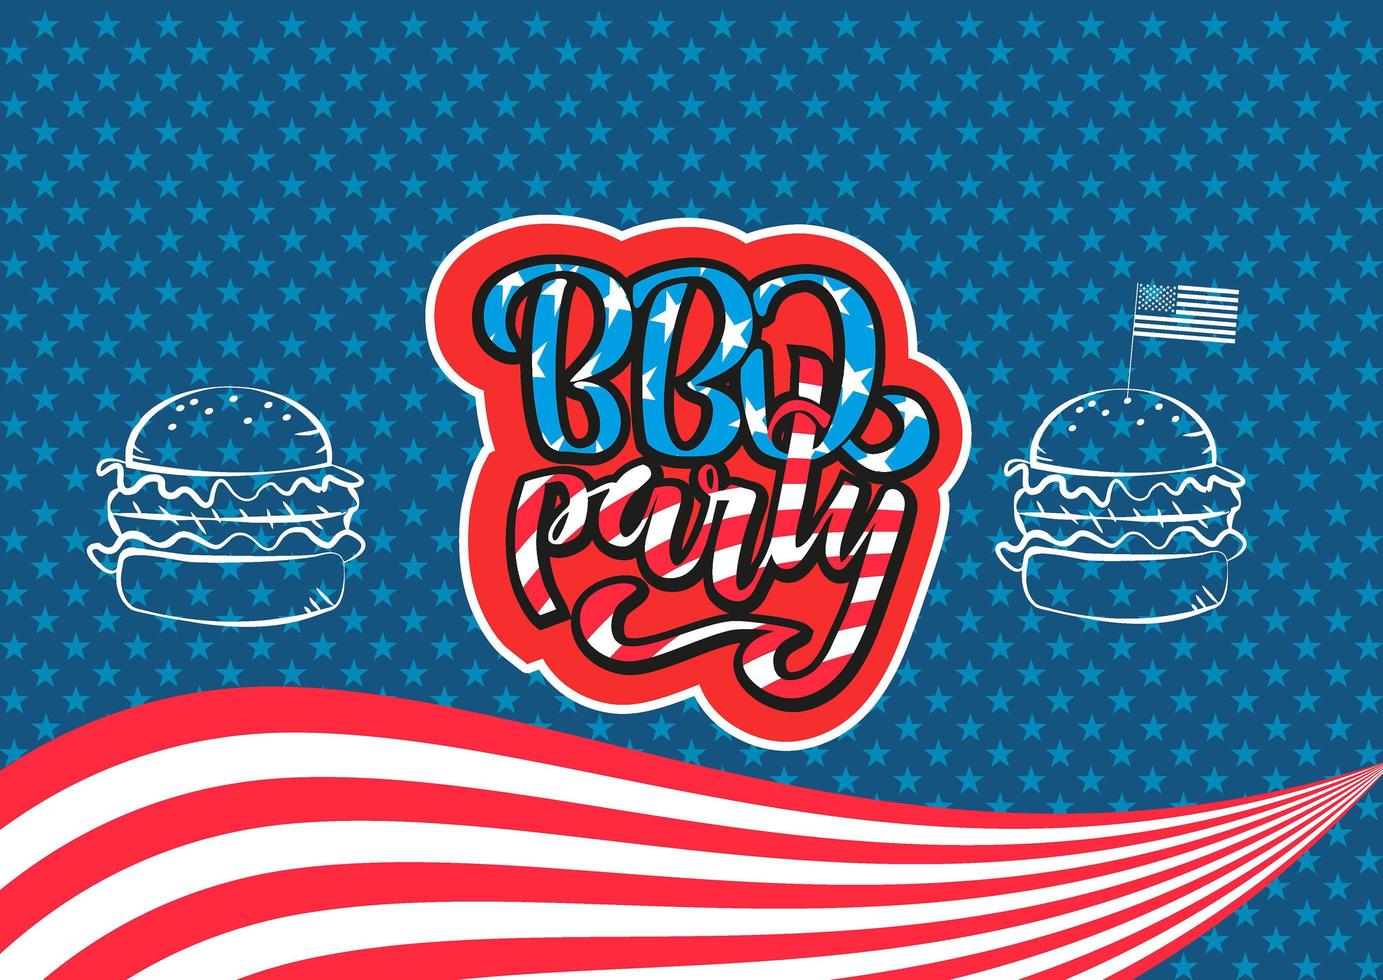 4 juli bbq party bokstäver inbjudan till amerikansk självständighetsdagen grill med 4 juli dekorationer stjärnor, flaggor, hamburgare på blå bakgrund. vektor handritad illustration.